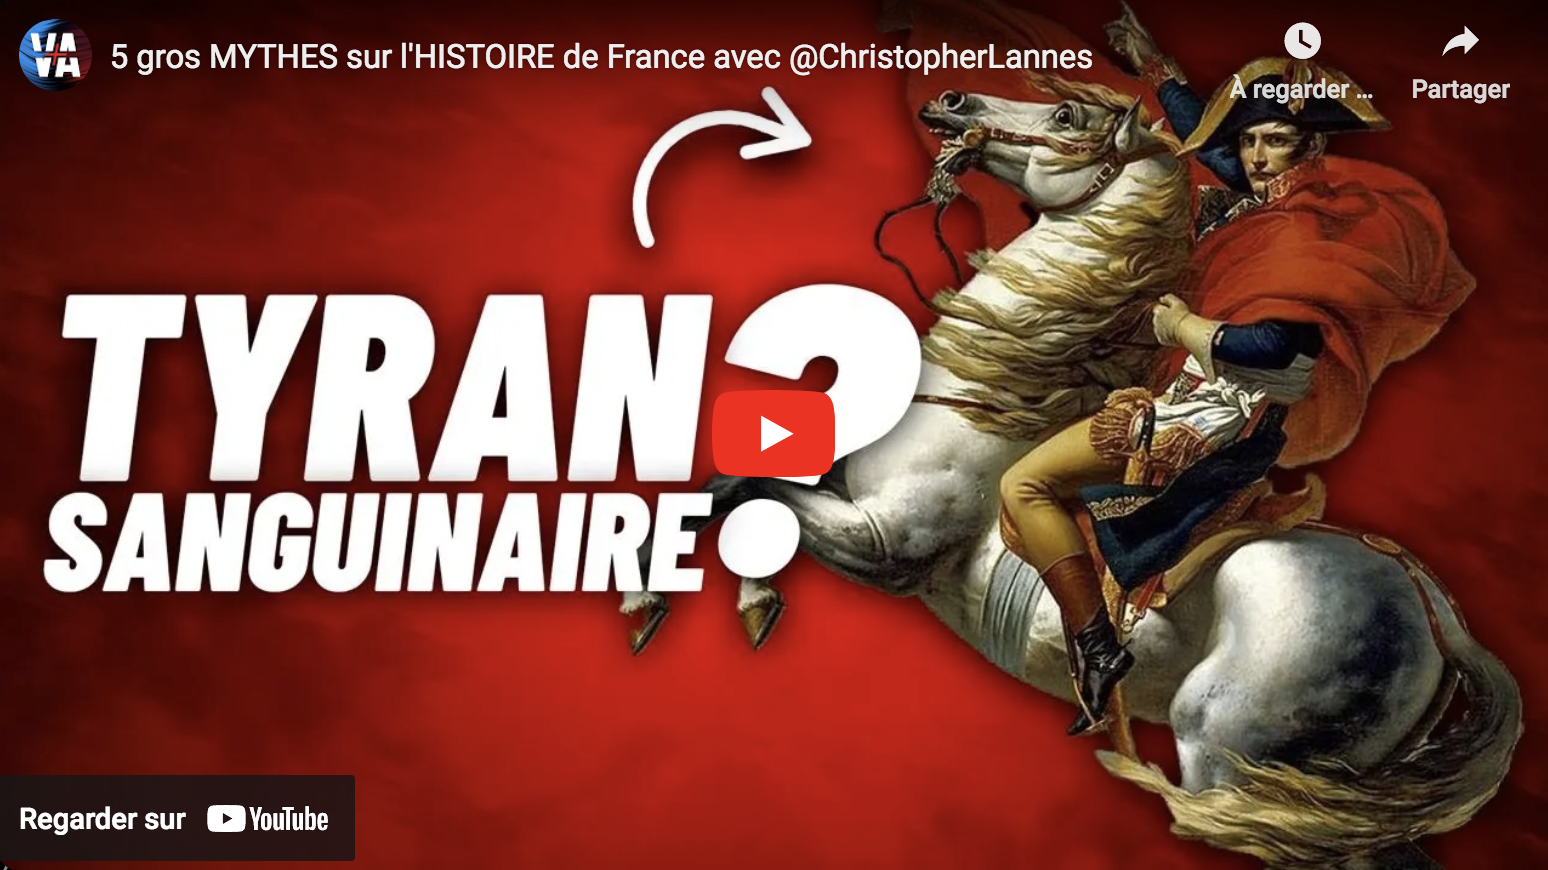 Cinq gros mythes sur l’histoire de France (Christopher Lannes)